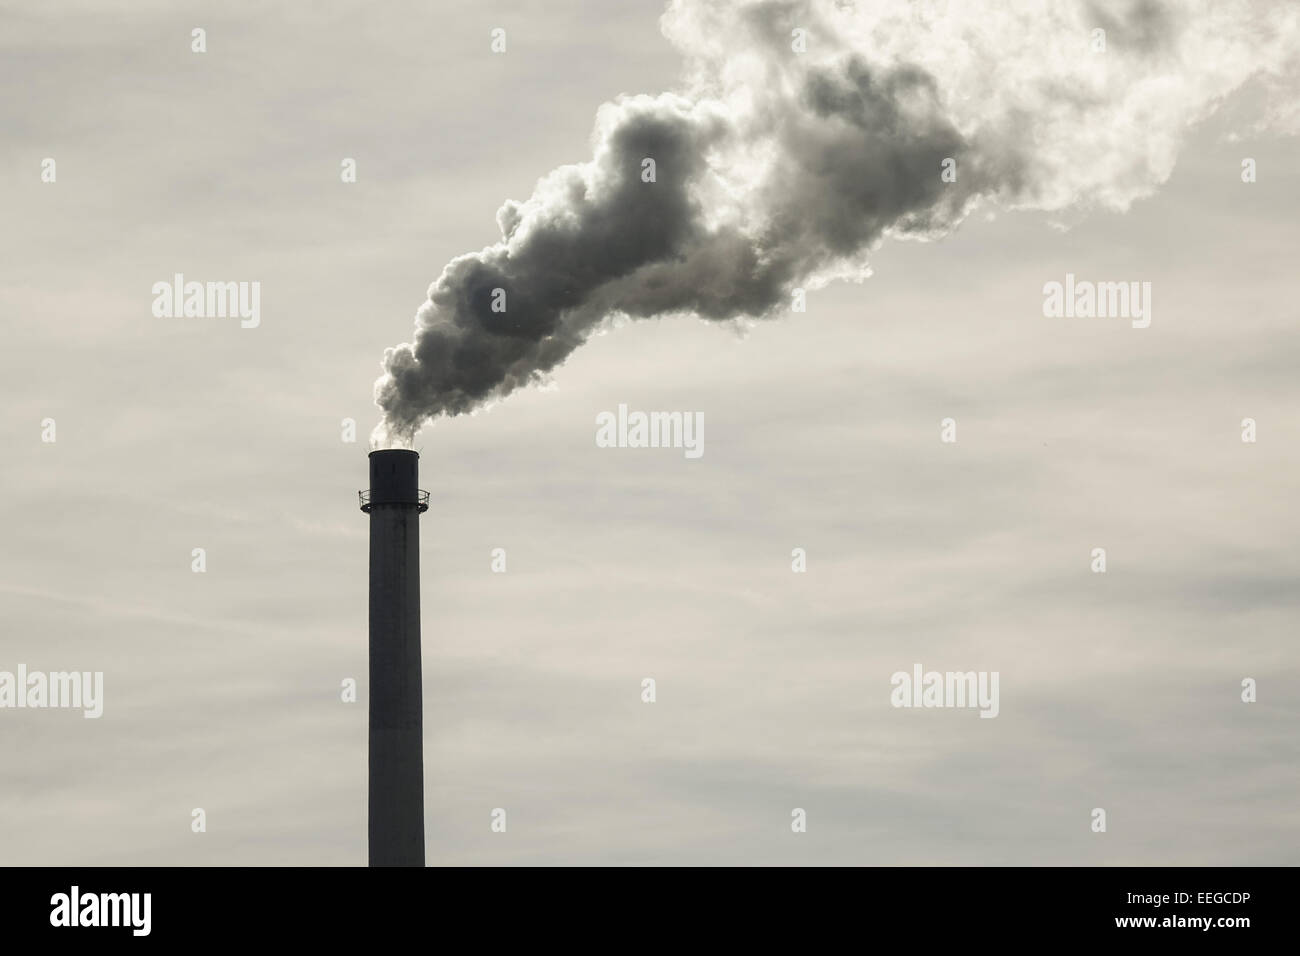 Rauchender Fabrikschornstein, fumatori Camino in fabbrica, le emissioni di CO2, il riscaldamento globale, forgia, fabbrica, fabbriche, chimne in fabbrica Foto Stock